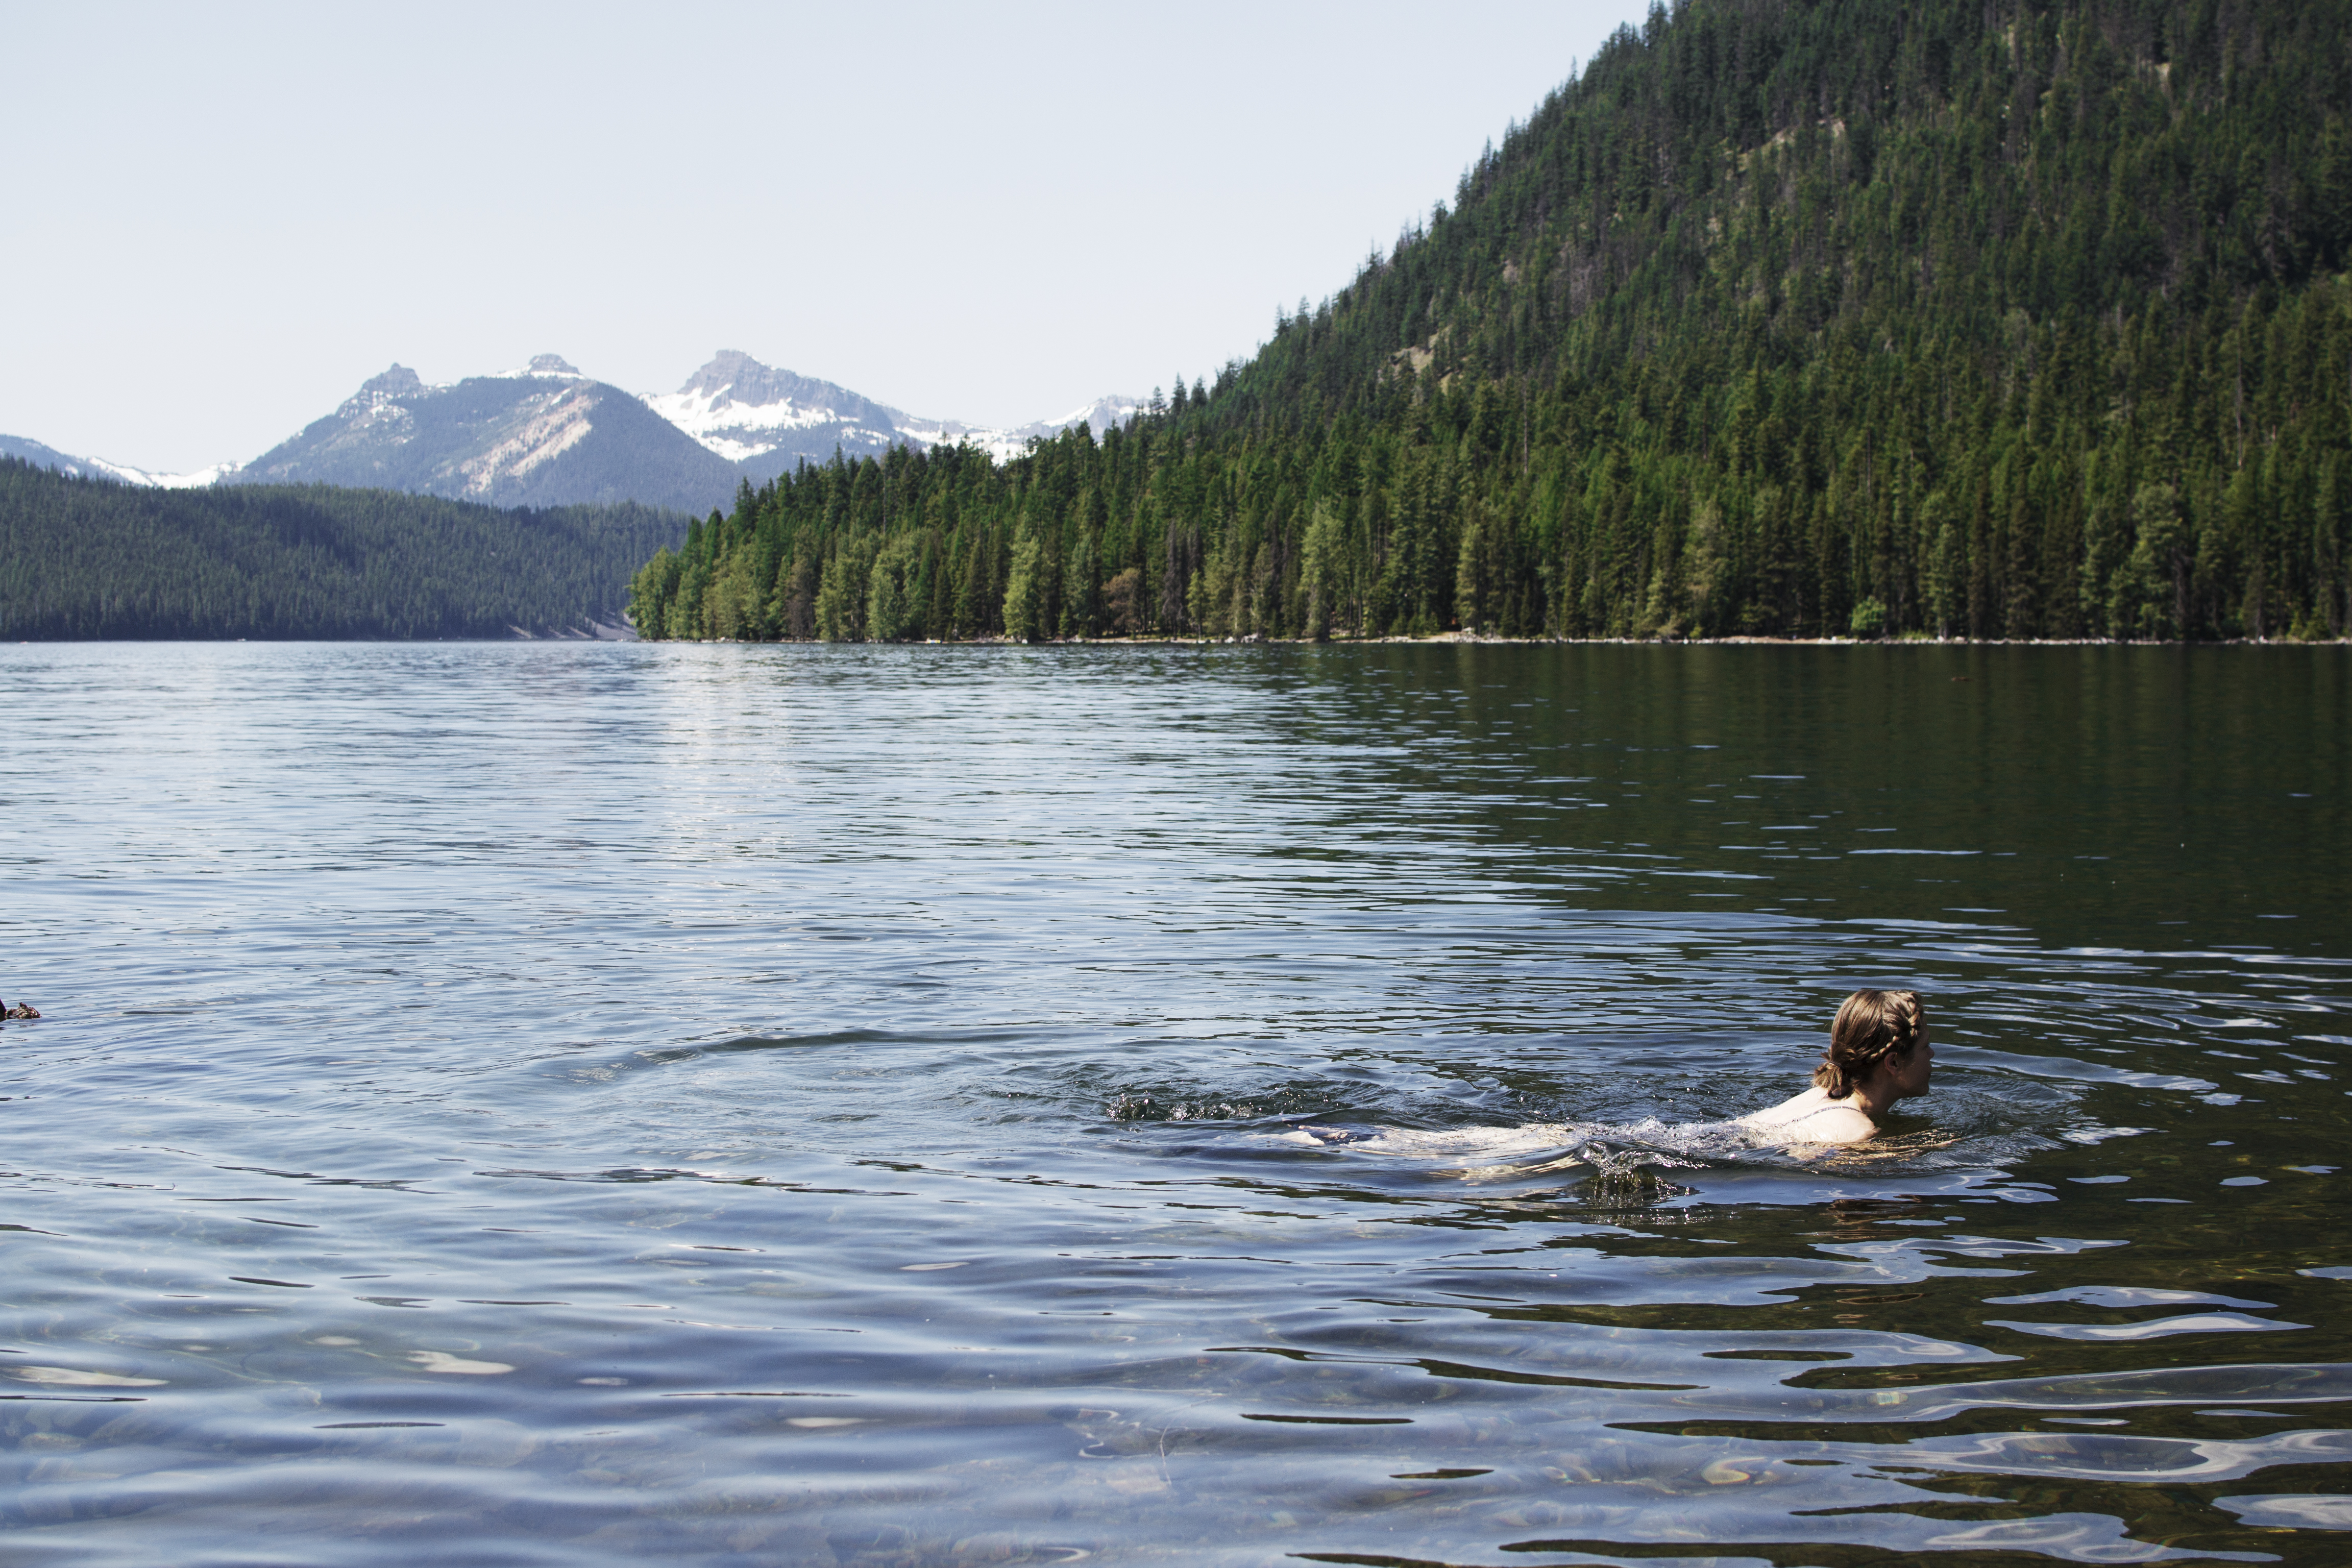 Swimming in Bumping Lake - bring joy